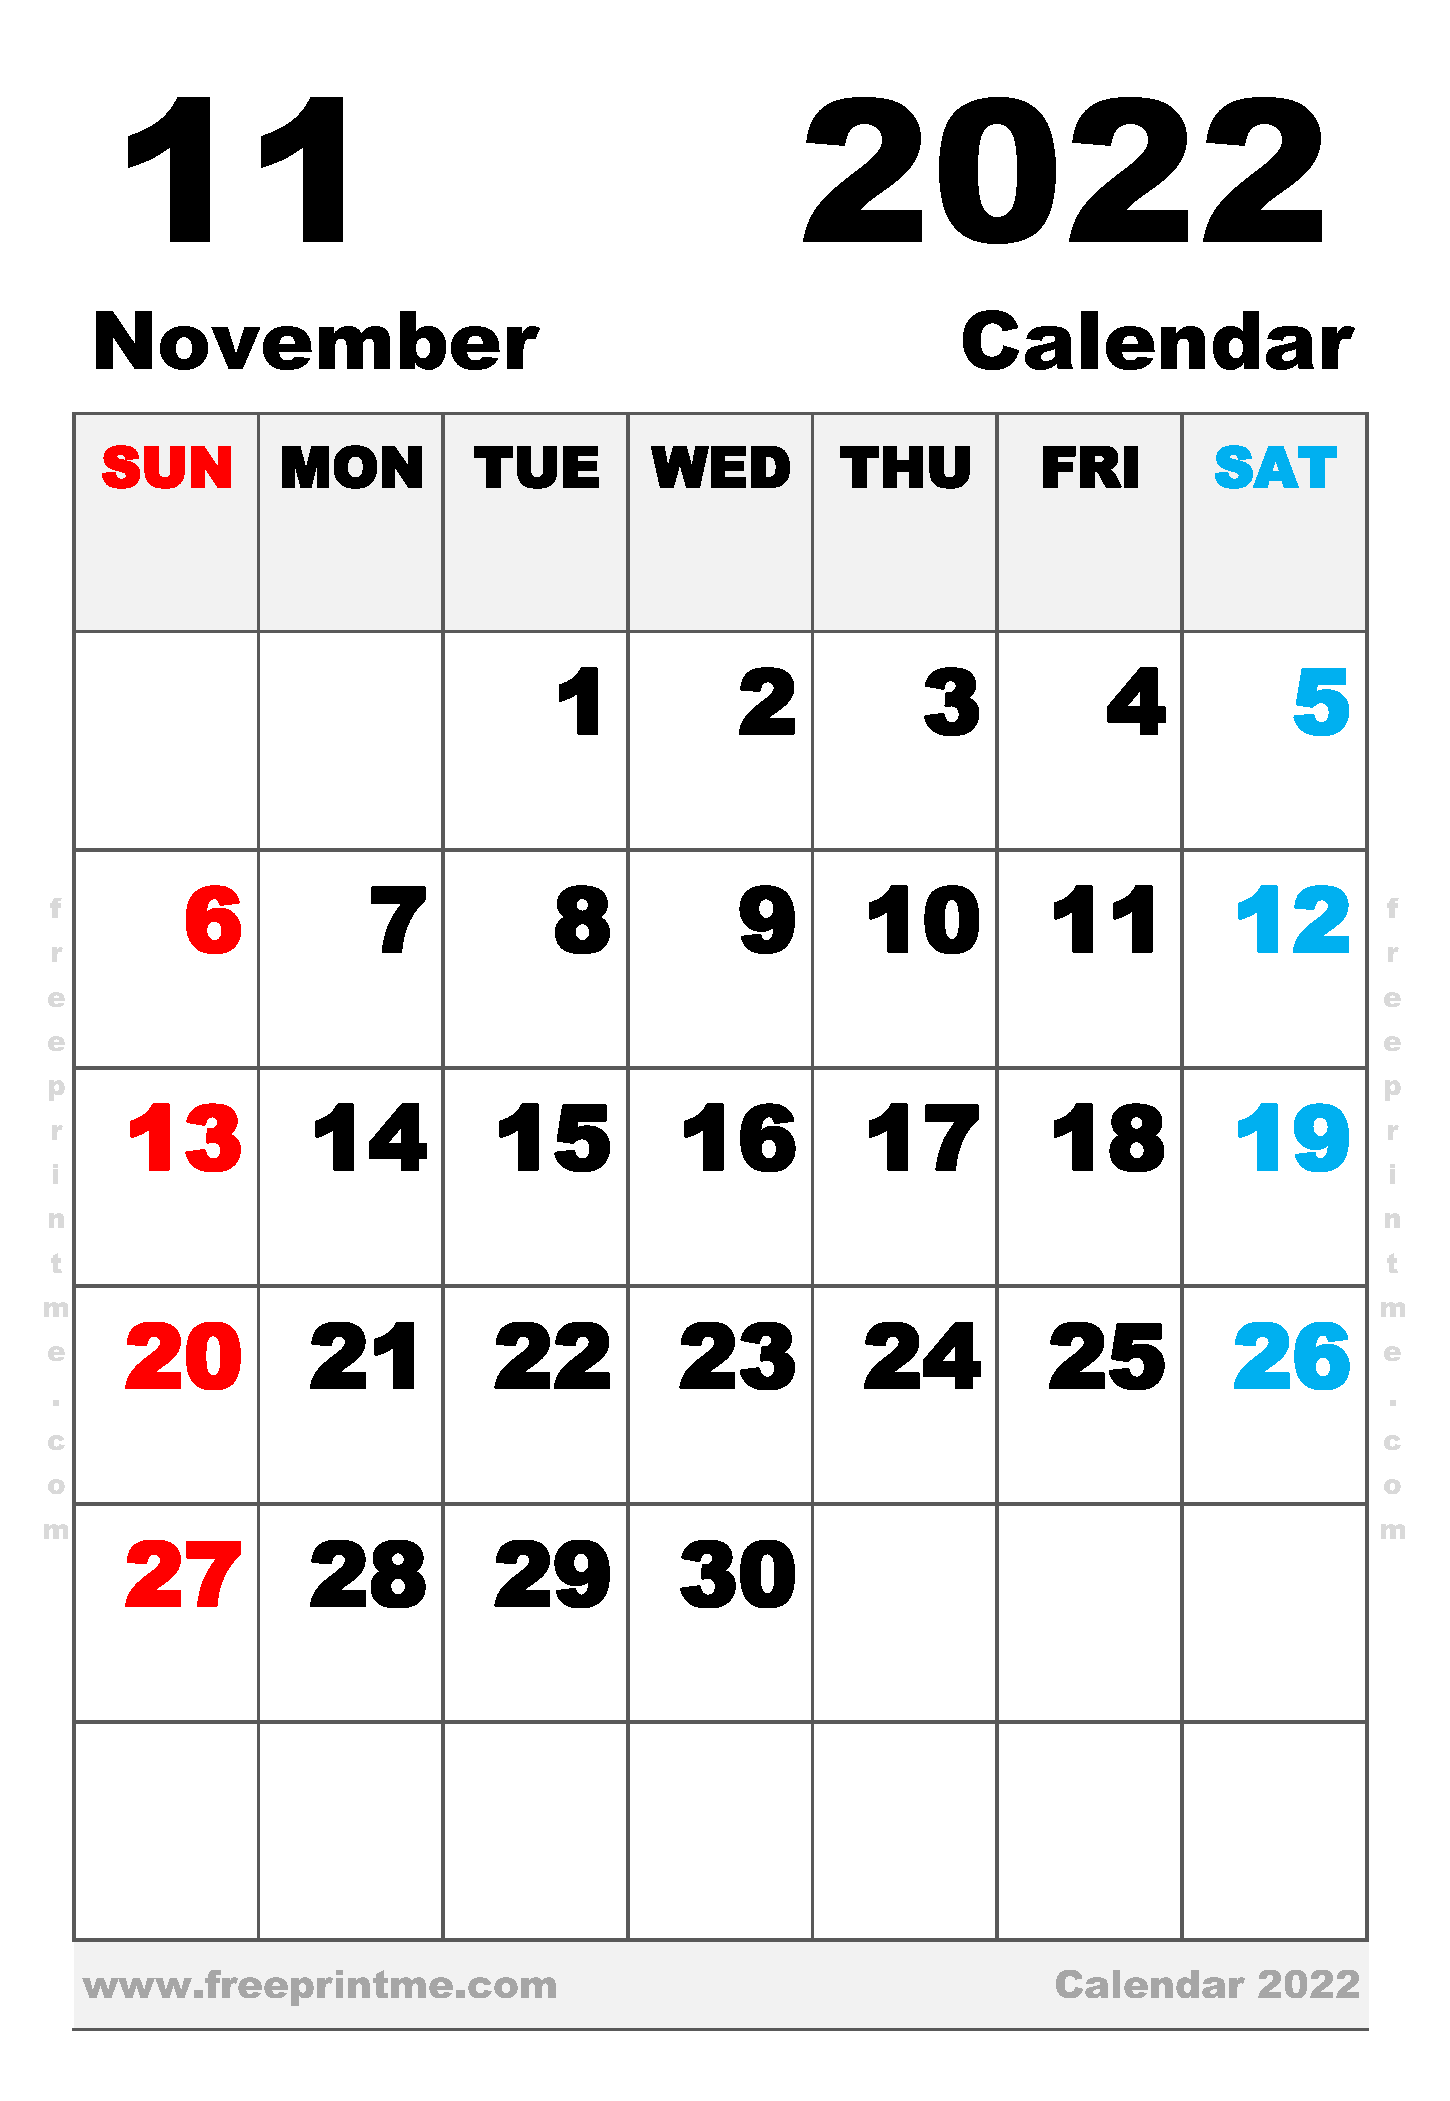 Free Printable November 2022 Calendar Executive